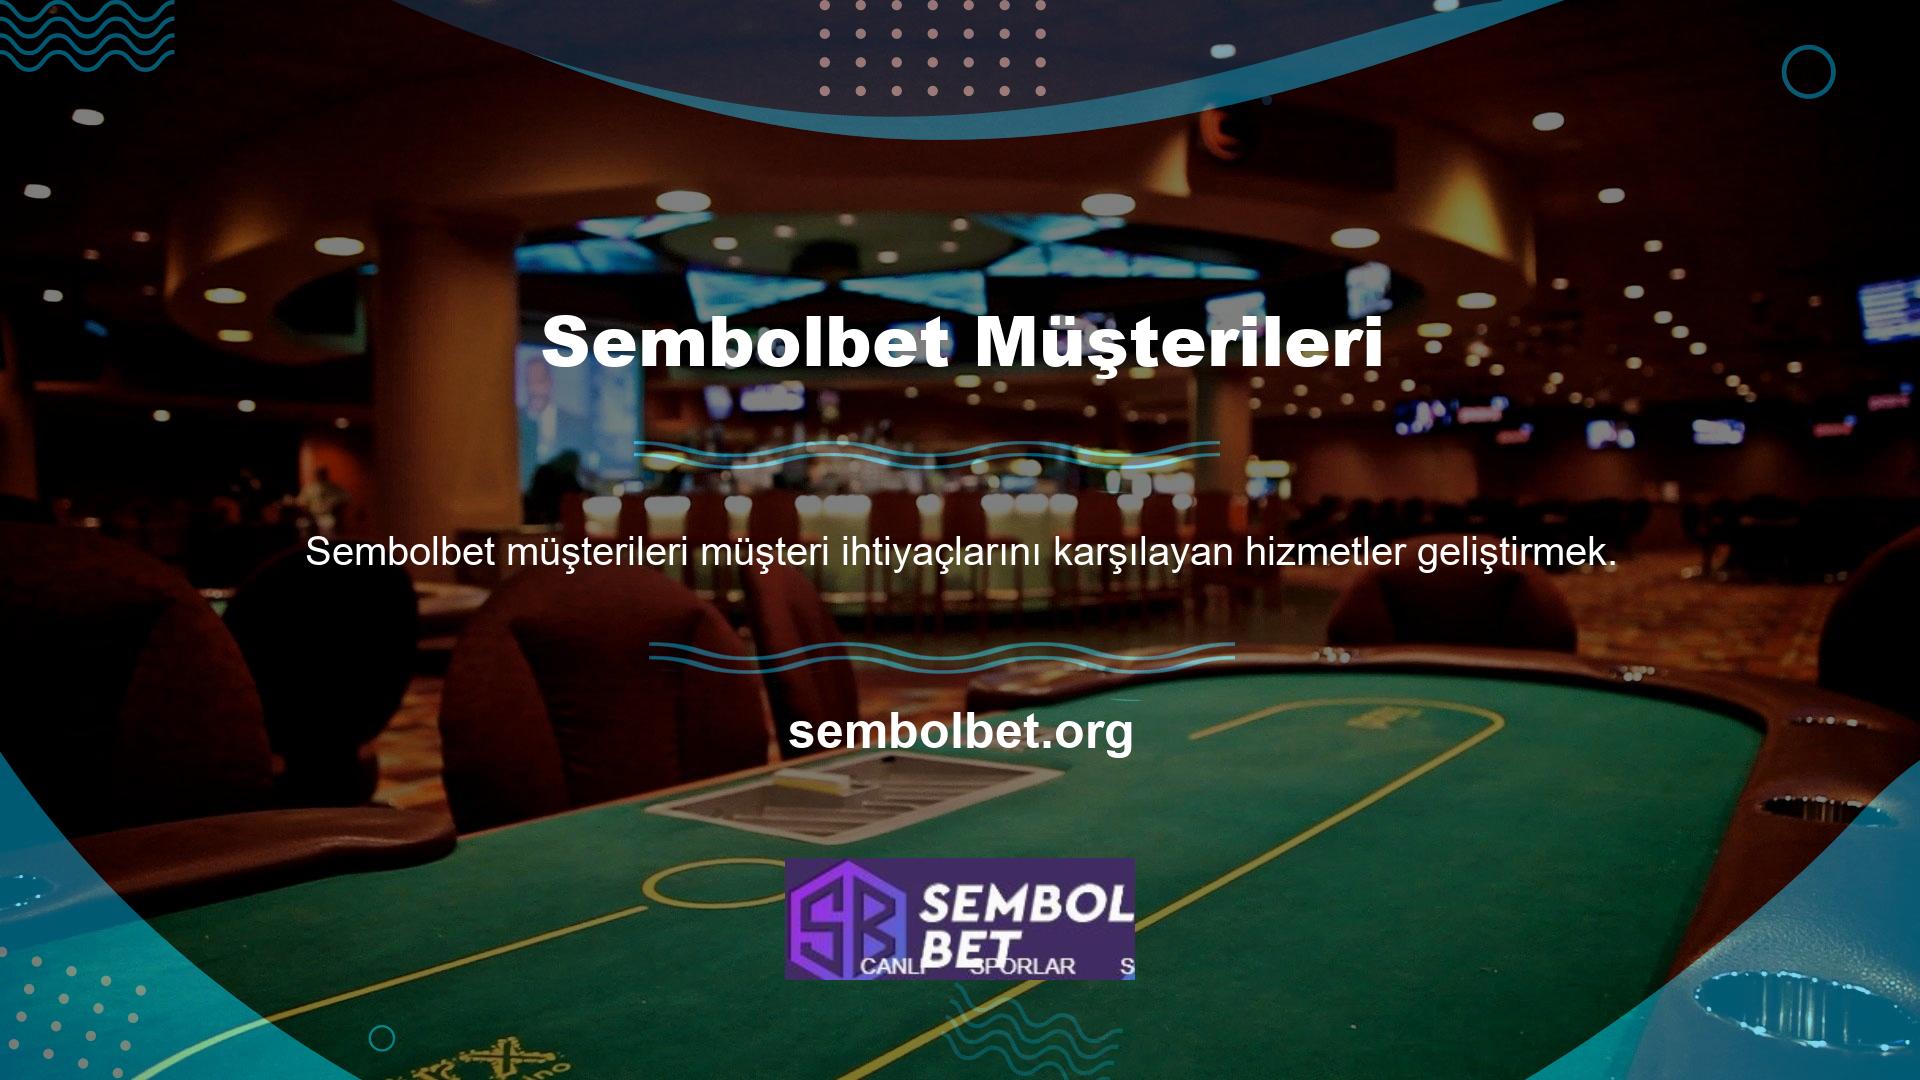 Sembolbet ayrıca casino, canlı bahis, casinolar ve çevrimiçi casino oyunlarına ilişkin detaylarıyla da öne çıkıyor